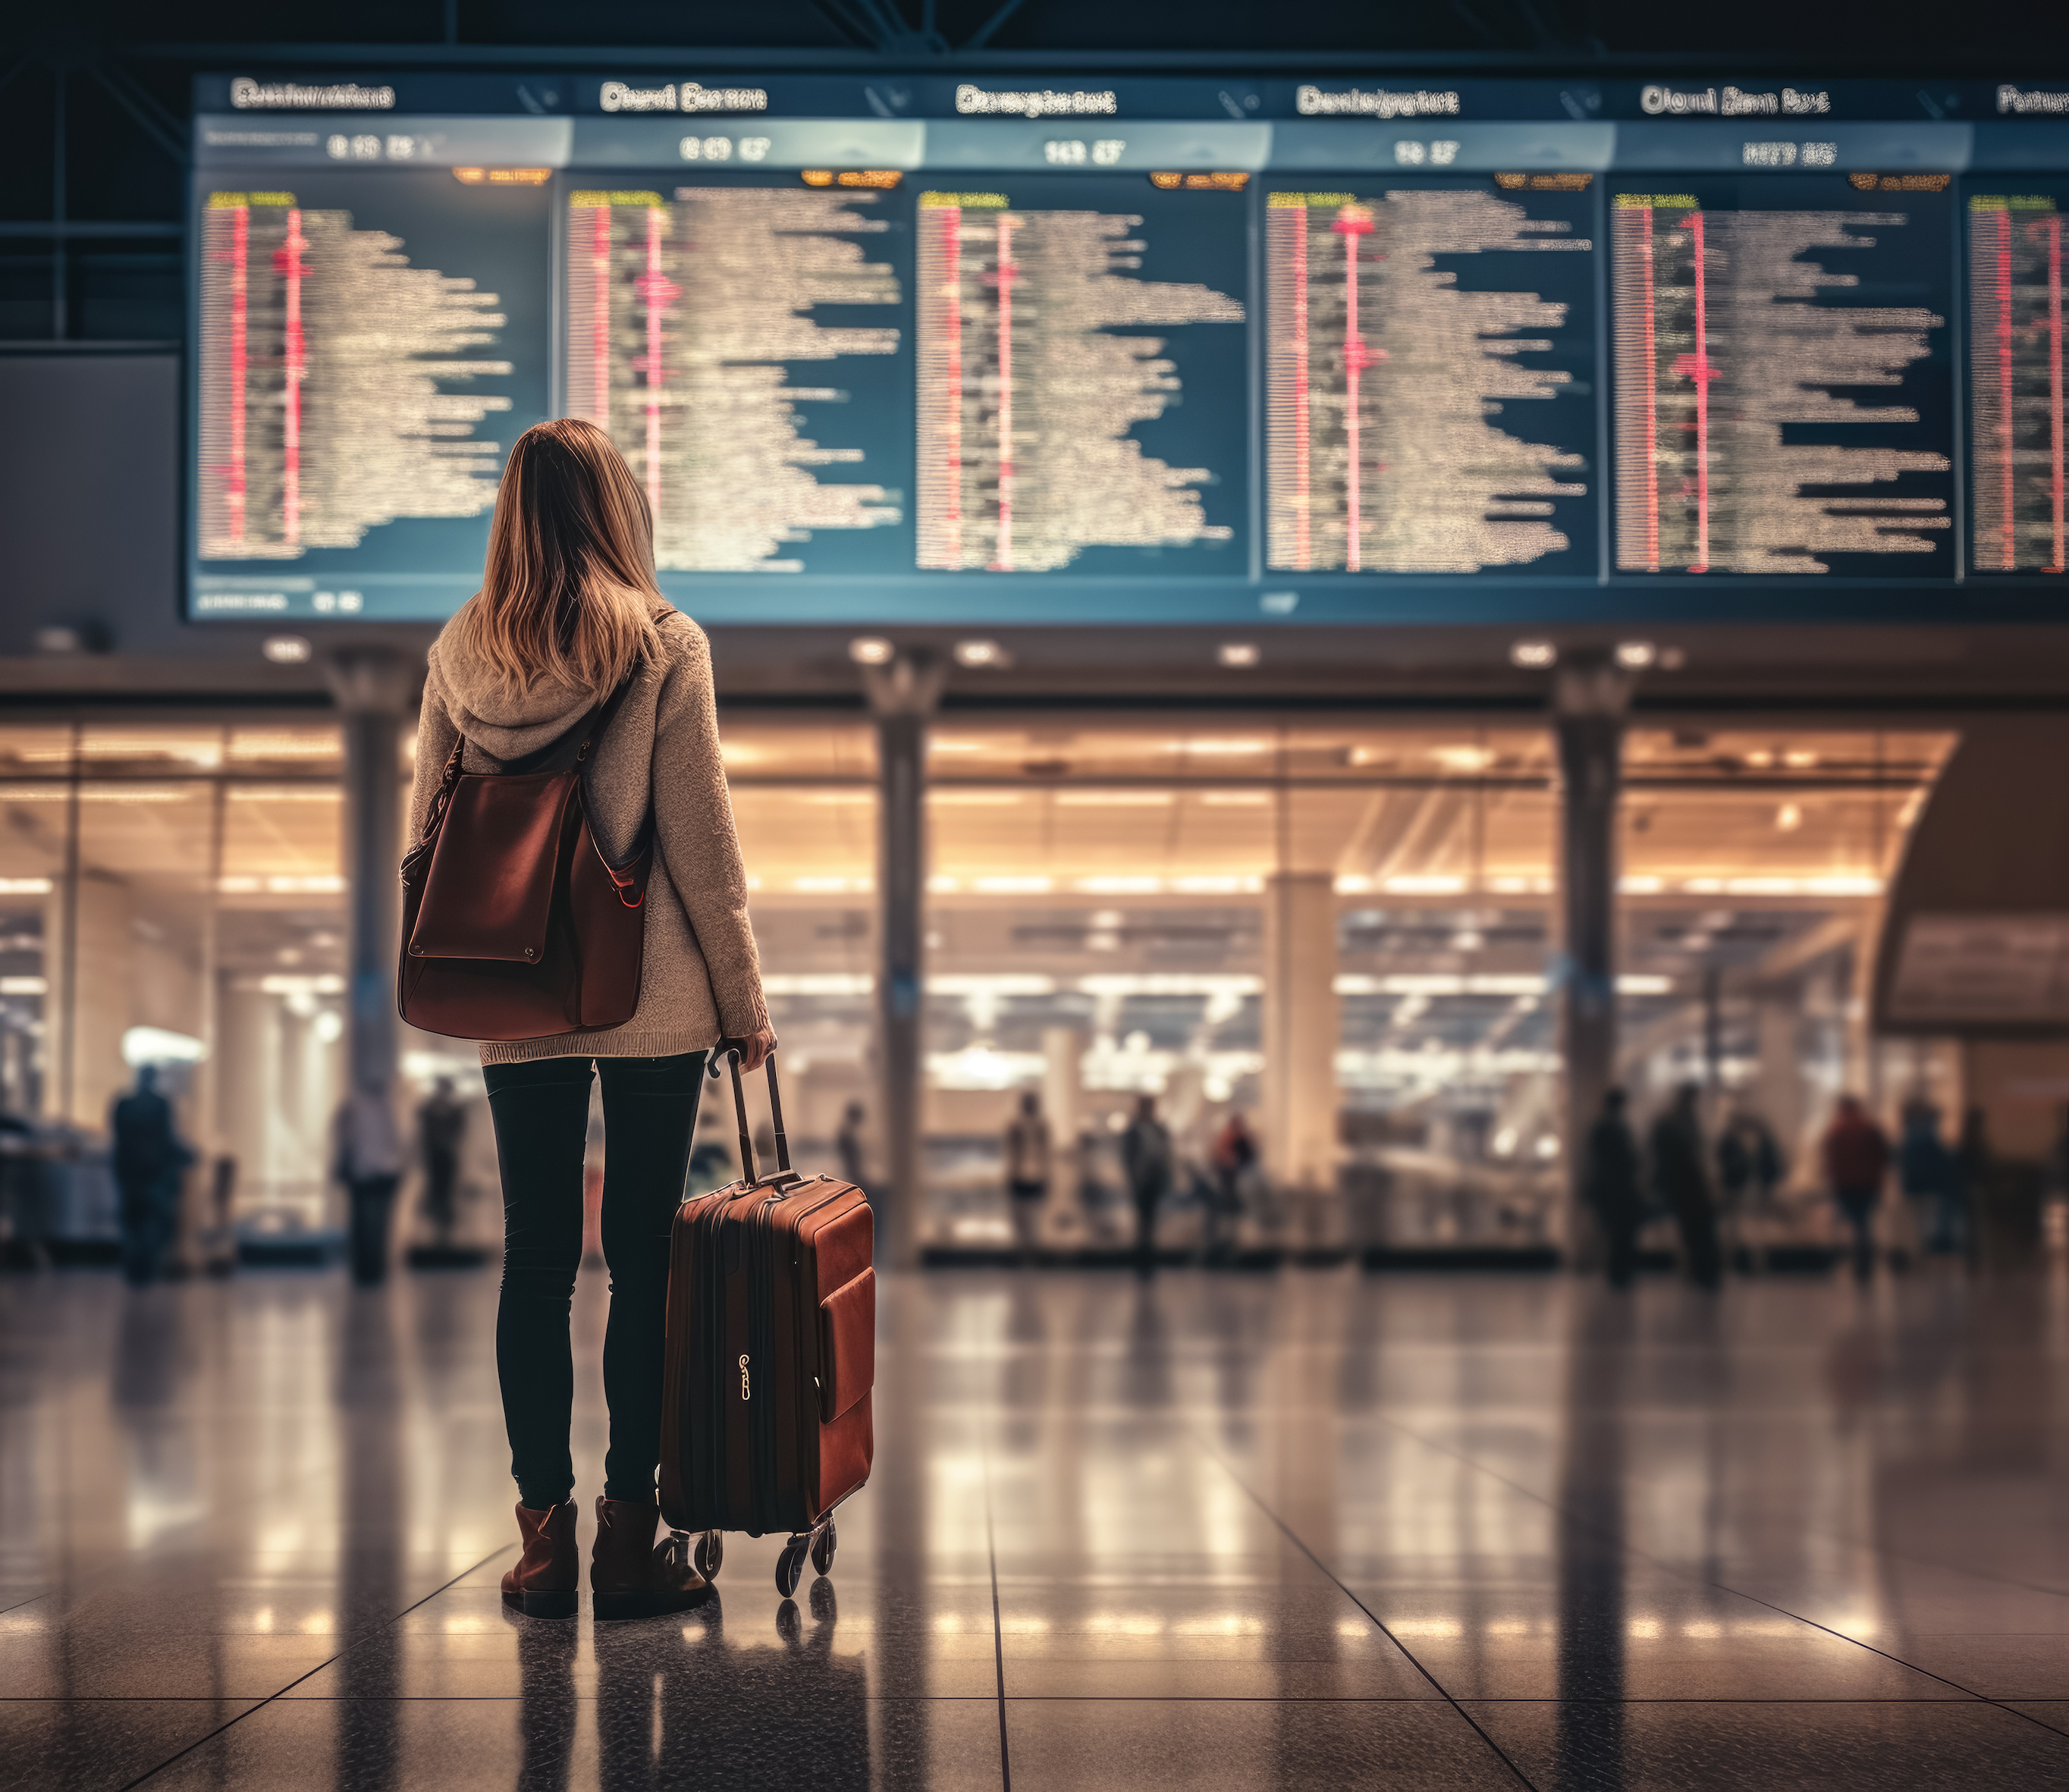 Pour faire face aux imprévus des voyages aériens, découvrez des conseils pratiques et des solutions. © Lubo Ivanko, Adobe Stock